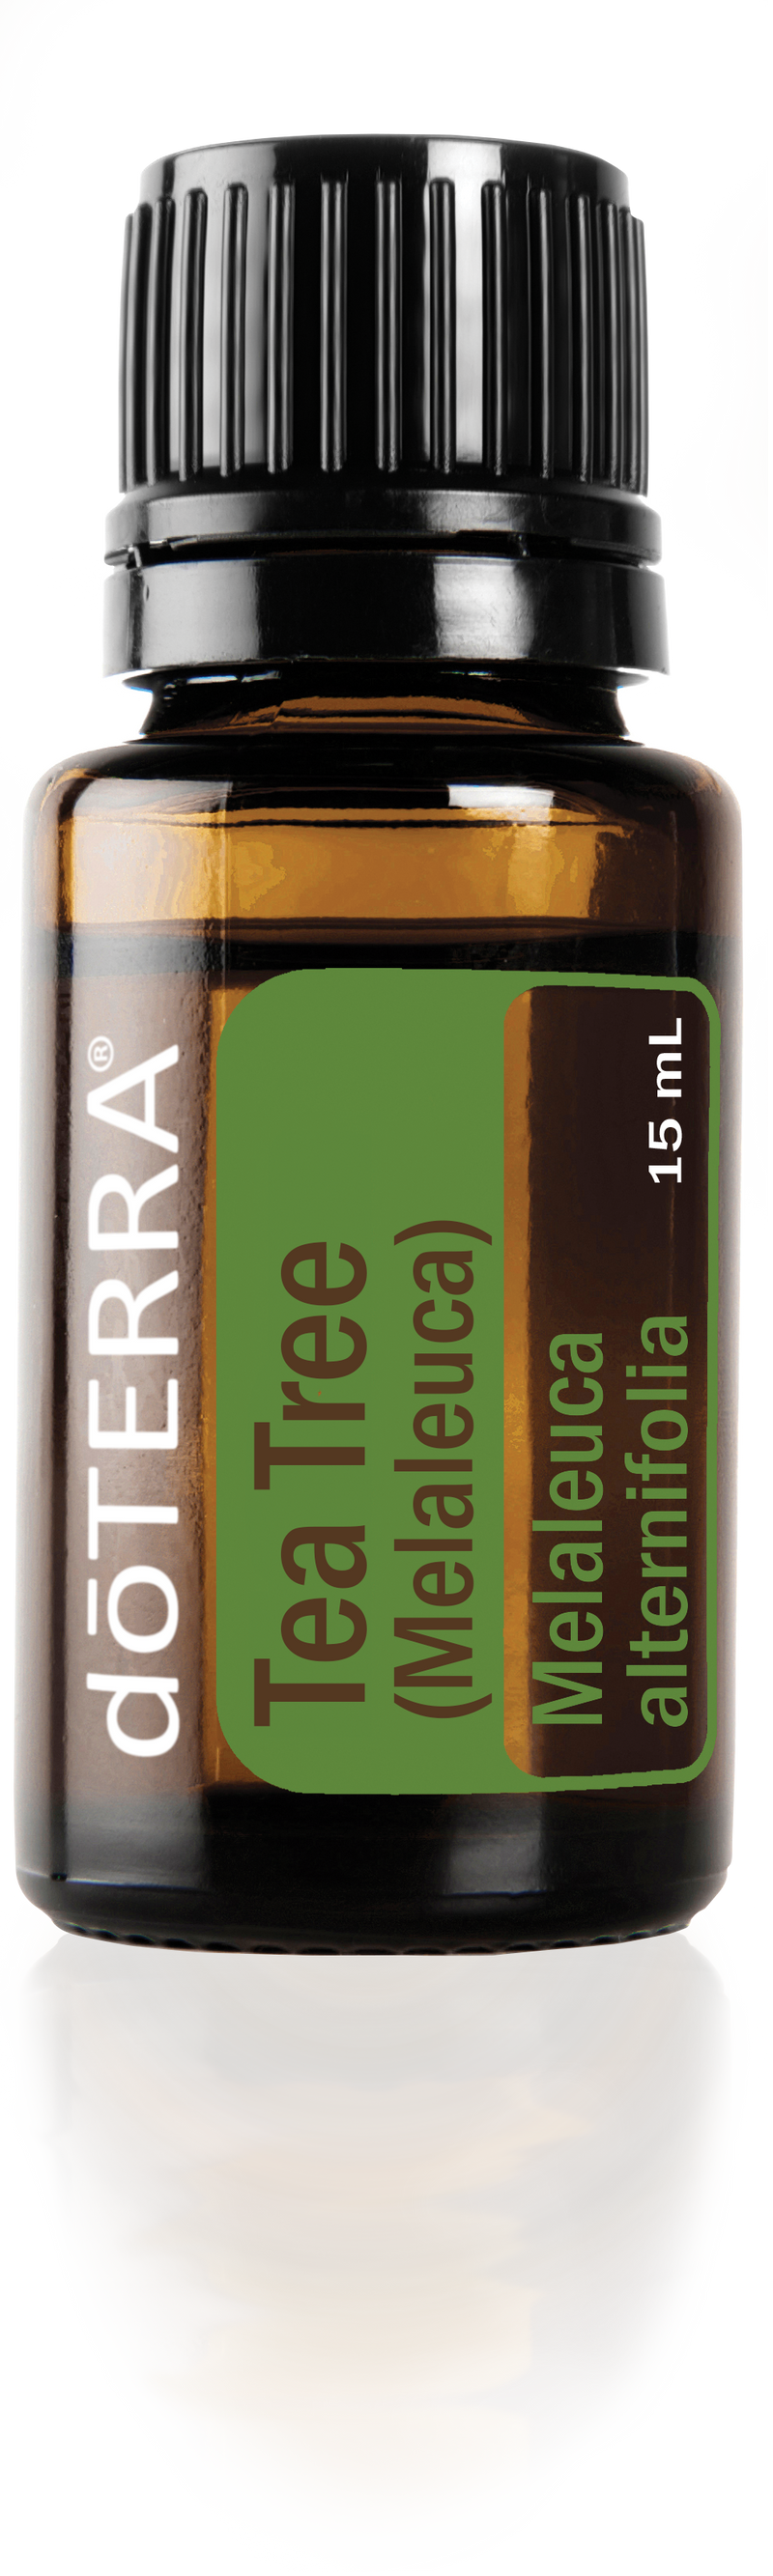 TEA TREE OIL - dōTERRA ESSENTIAL OILS